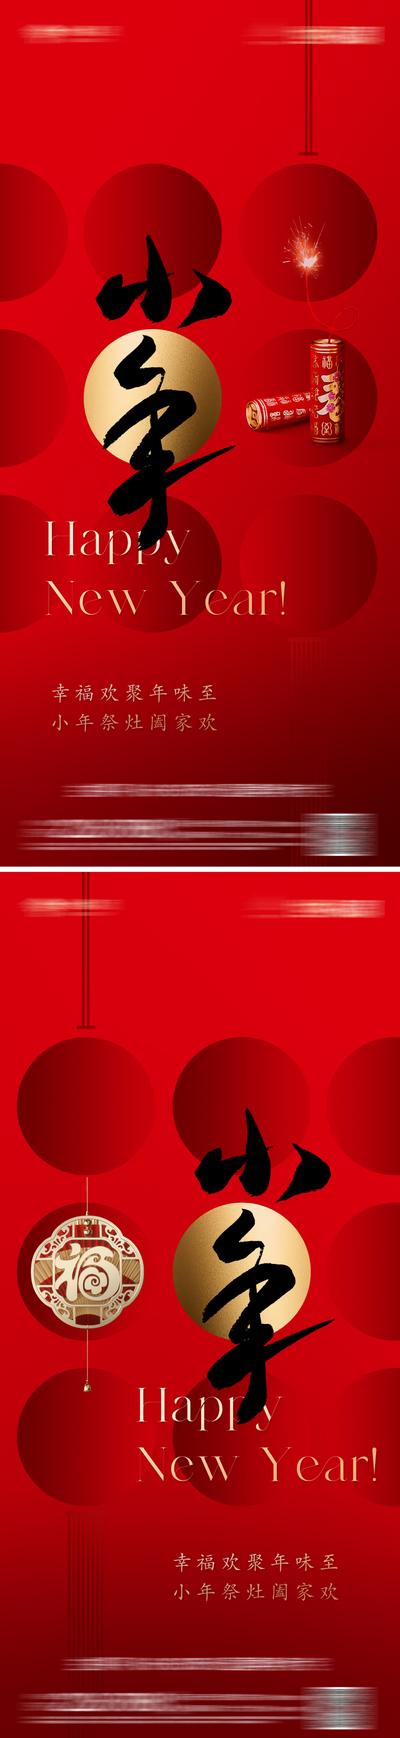 南门网 广告 海报 地产 小年 节日 中国风 质感 传统 灯笼 炮竹红色 肌理 喜庆 美学 东方 金属字 意境 唯美 简约